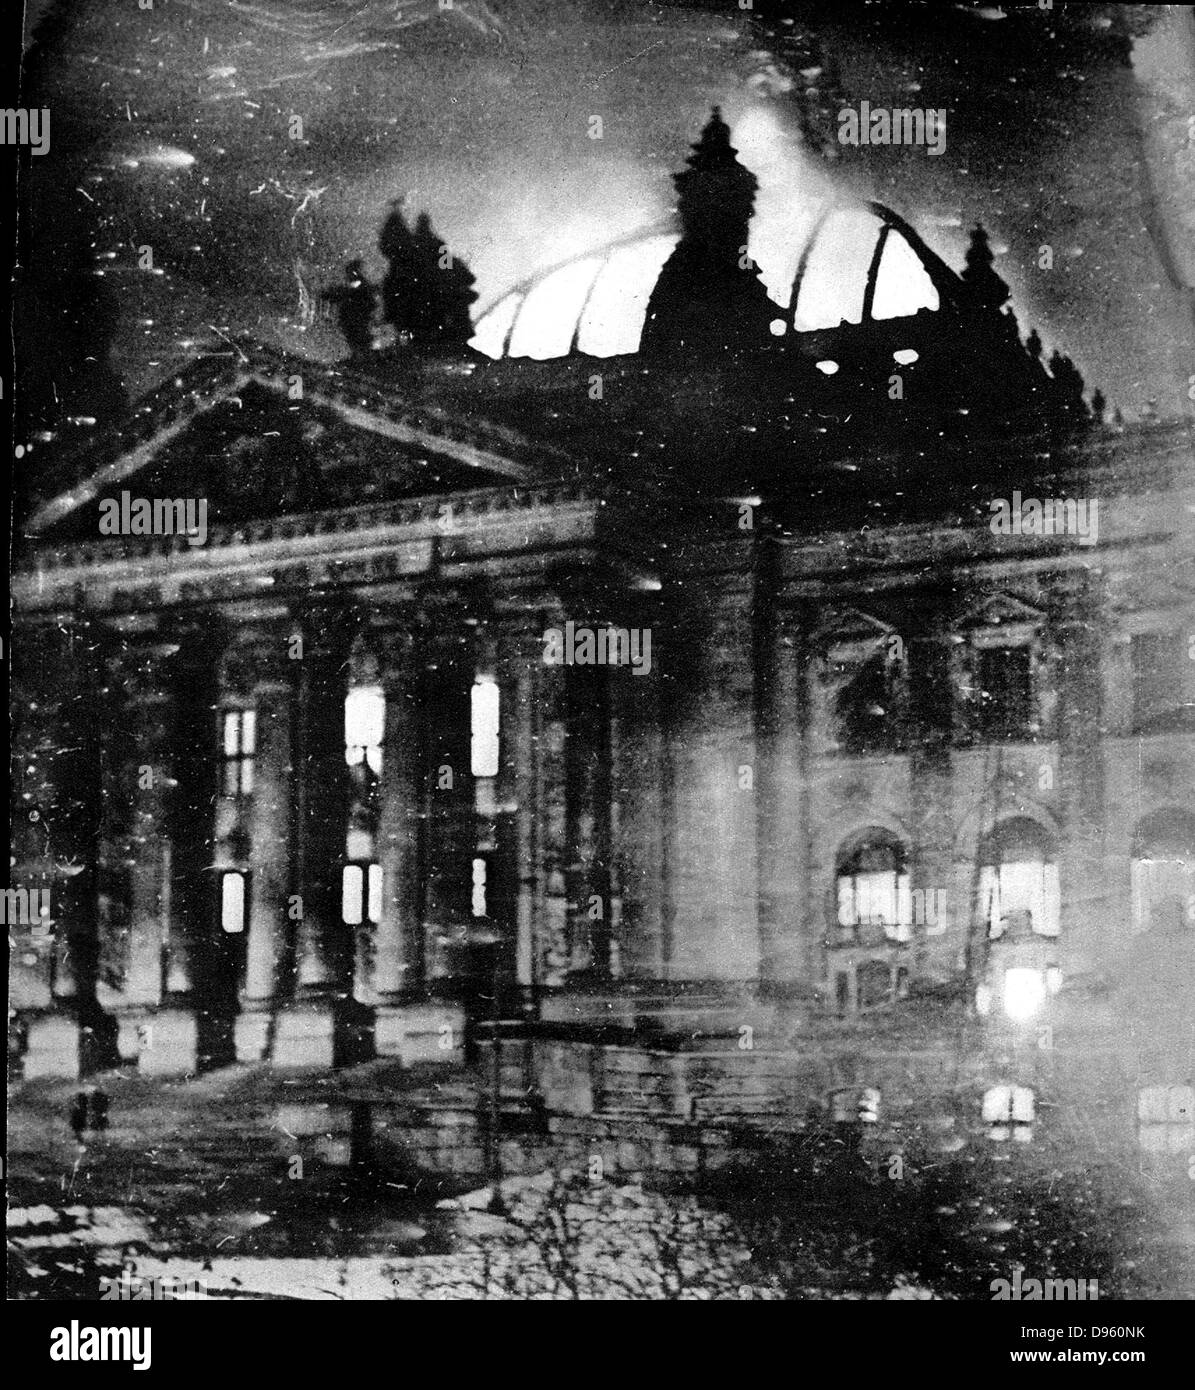 El 27 de febrero de 1933, el edificio del Reichstag fue objeto de un ataque incendiario. Este evento fue fundamental en el establecimiento de la Alemania Nazi. Foto de stock